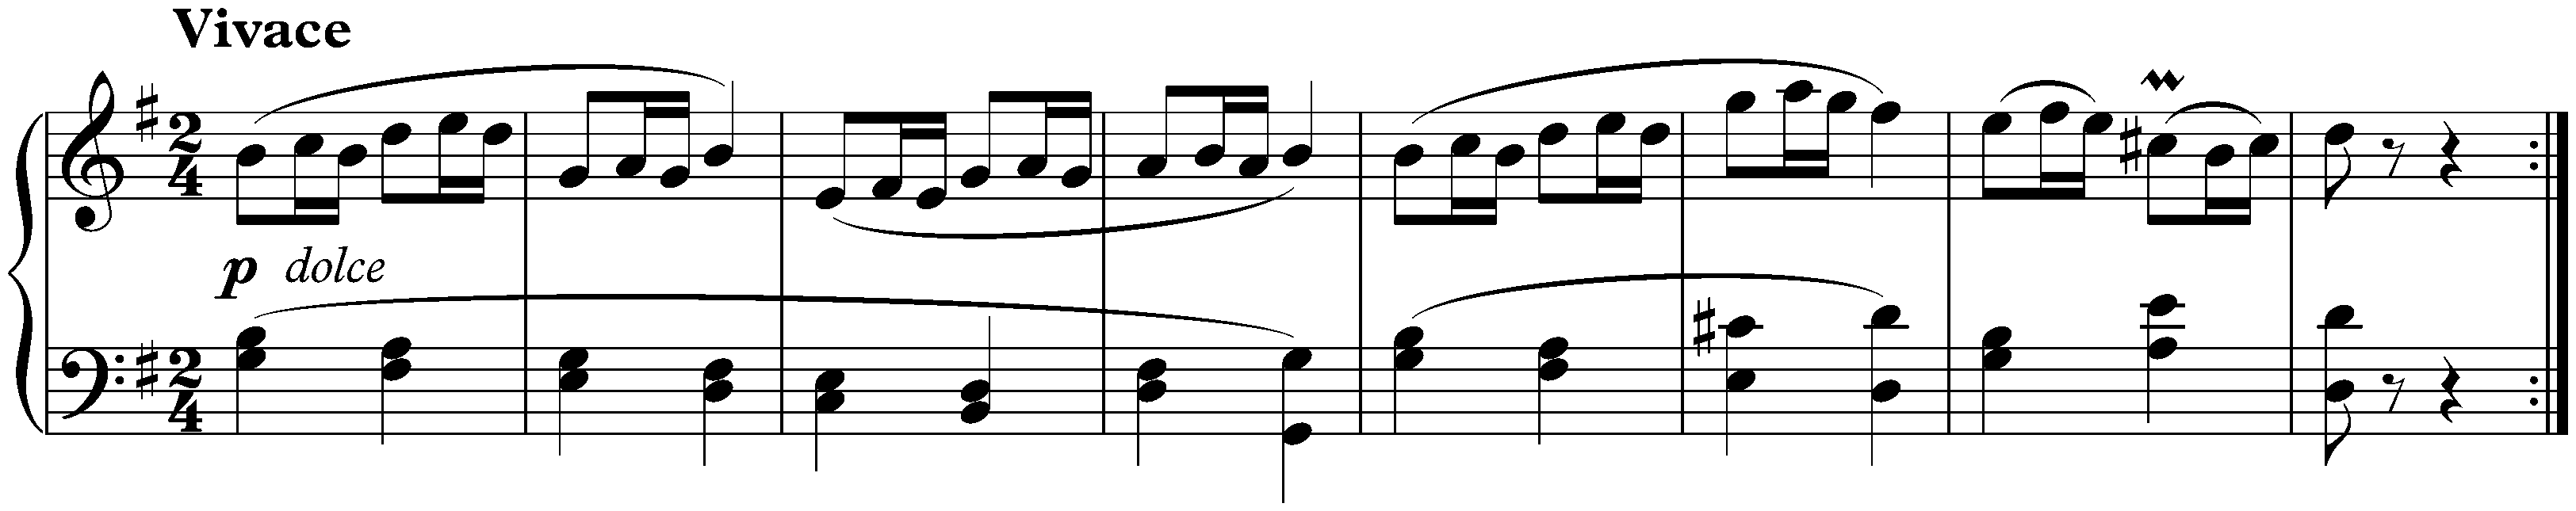 Sonata no. 25 in G major, op. 79; 3. Vivace